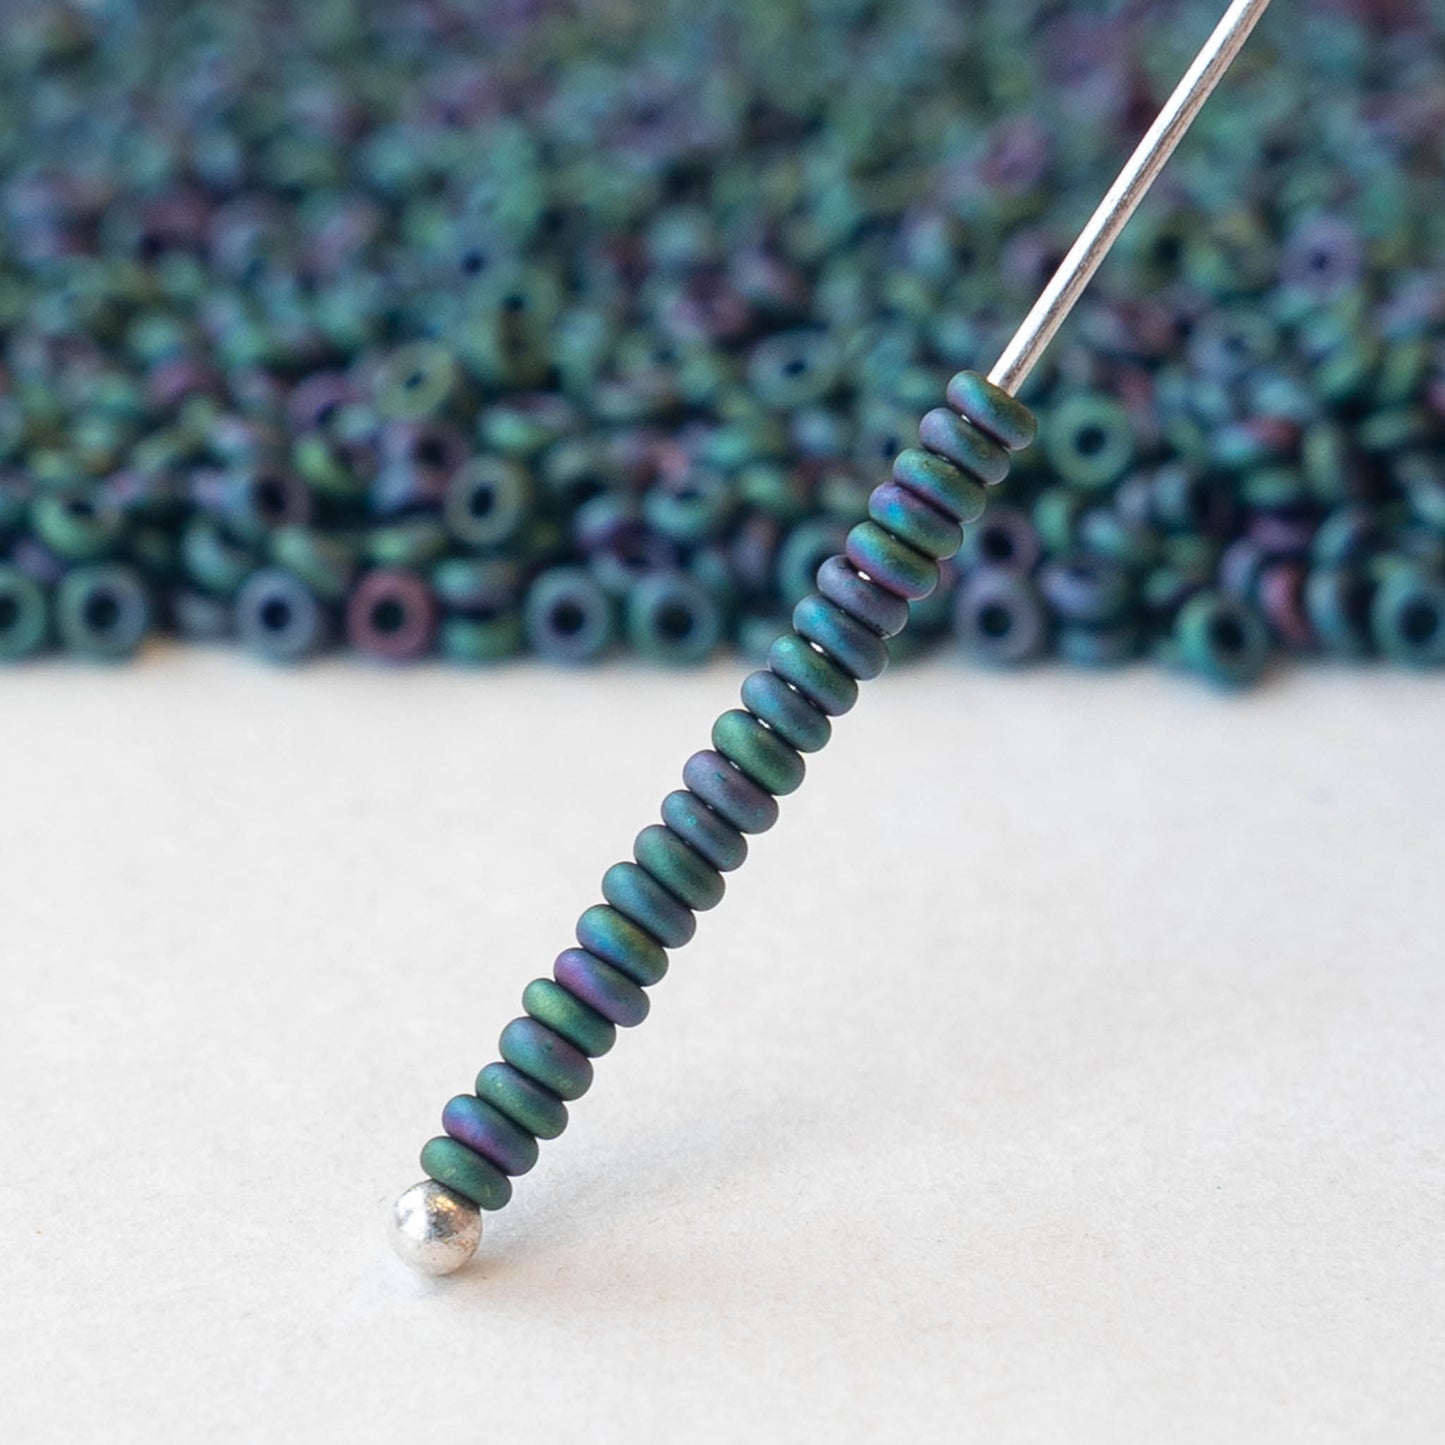 2.2mm O-Ring Beads - Teal Iris Matte - 5 grams